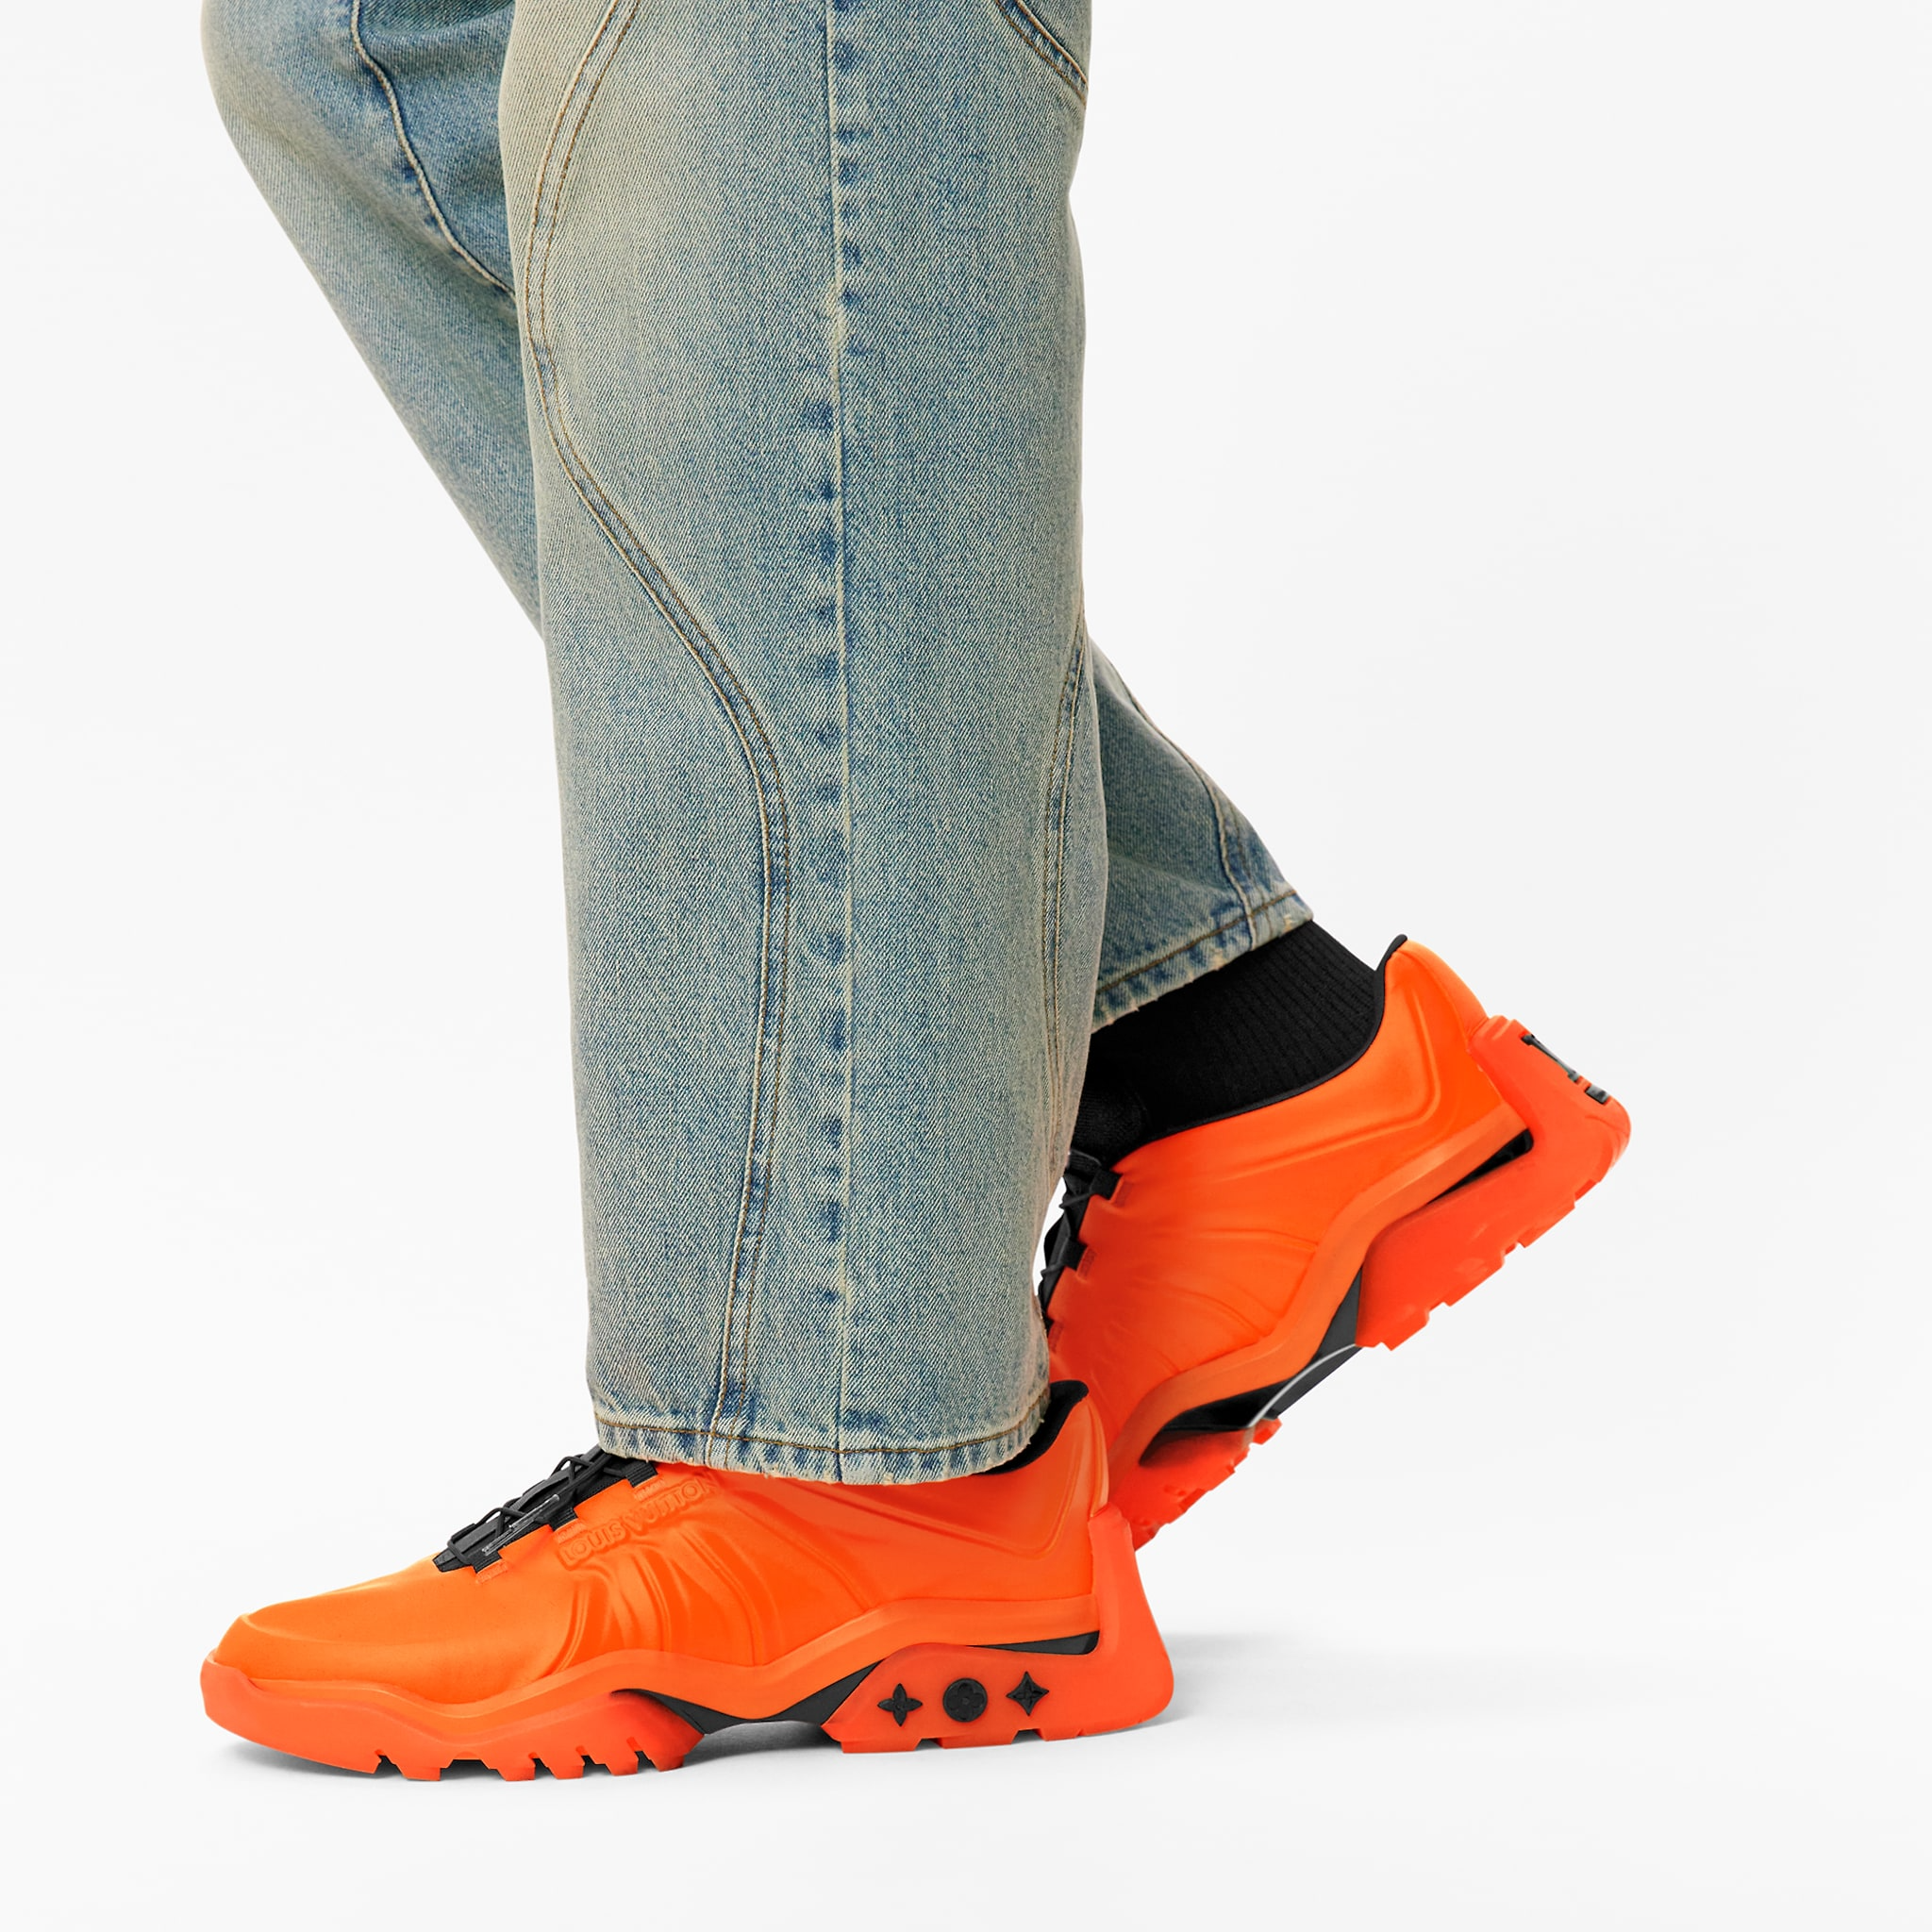 Giày Louis Vuitton Millenium Sneaker Orange 1A9910 - Authentic-Shoes